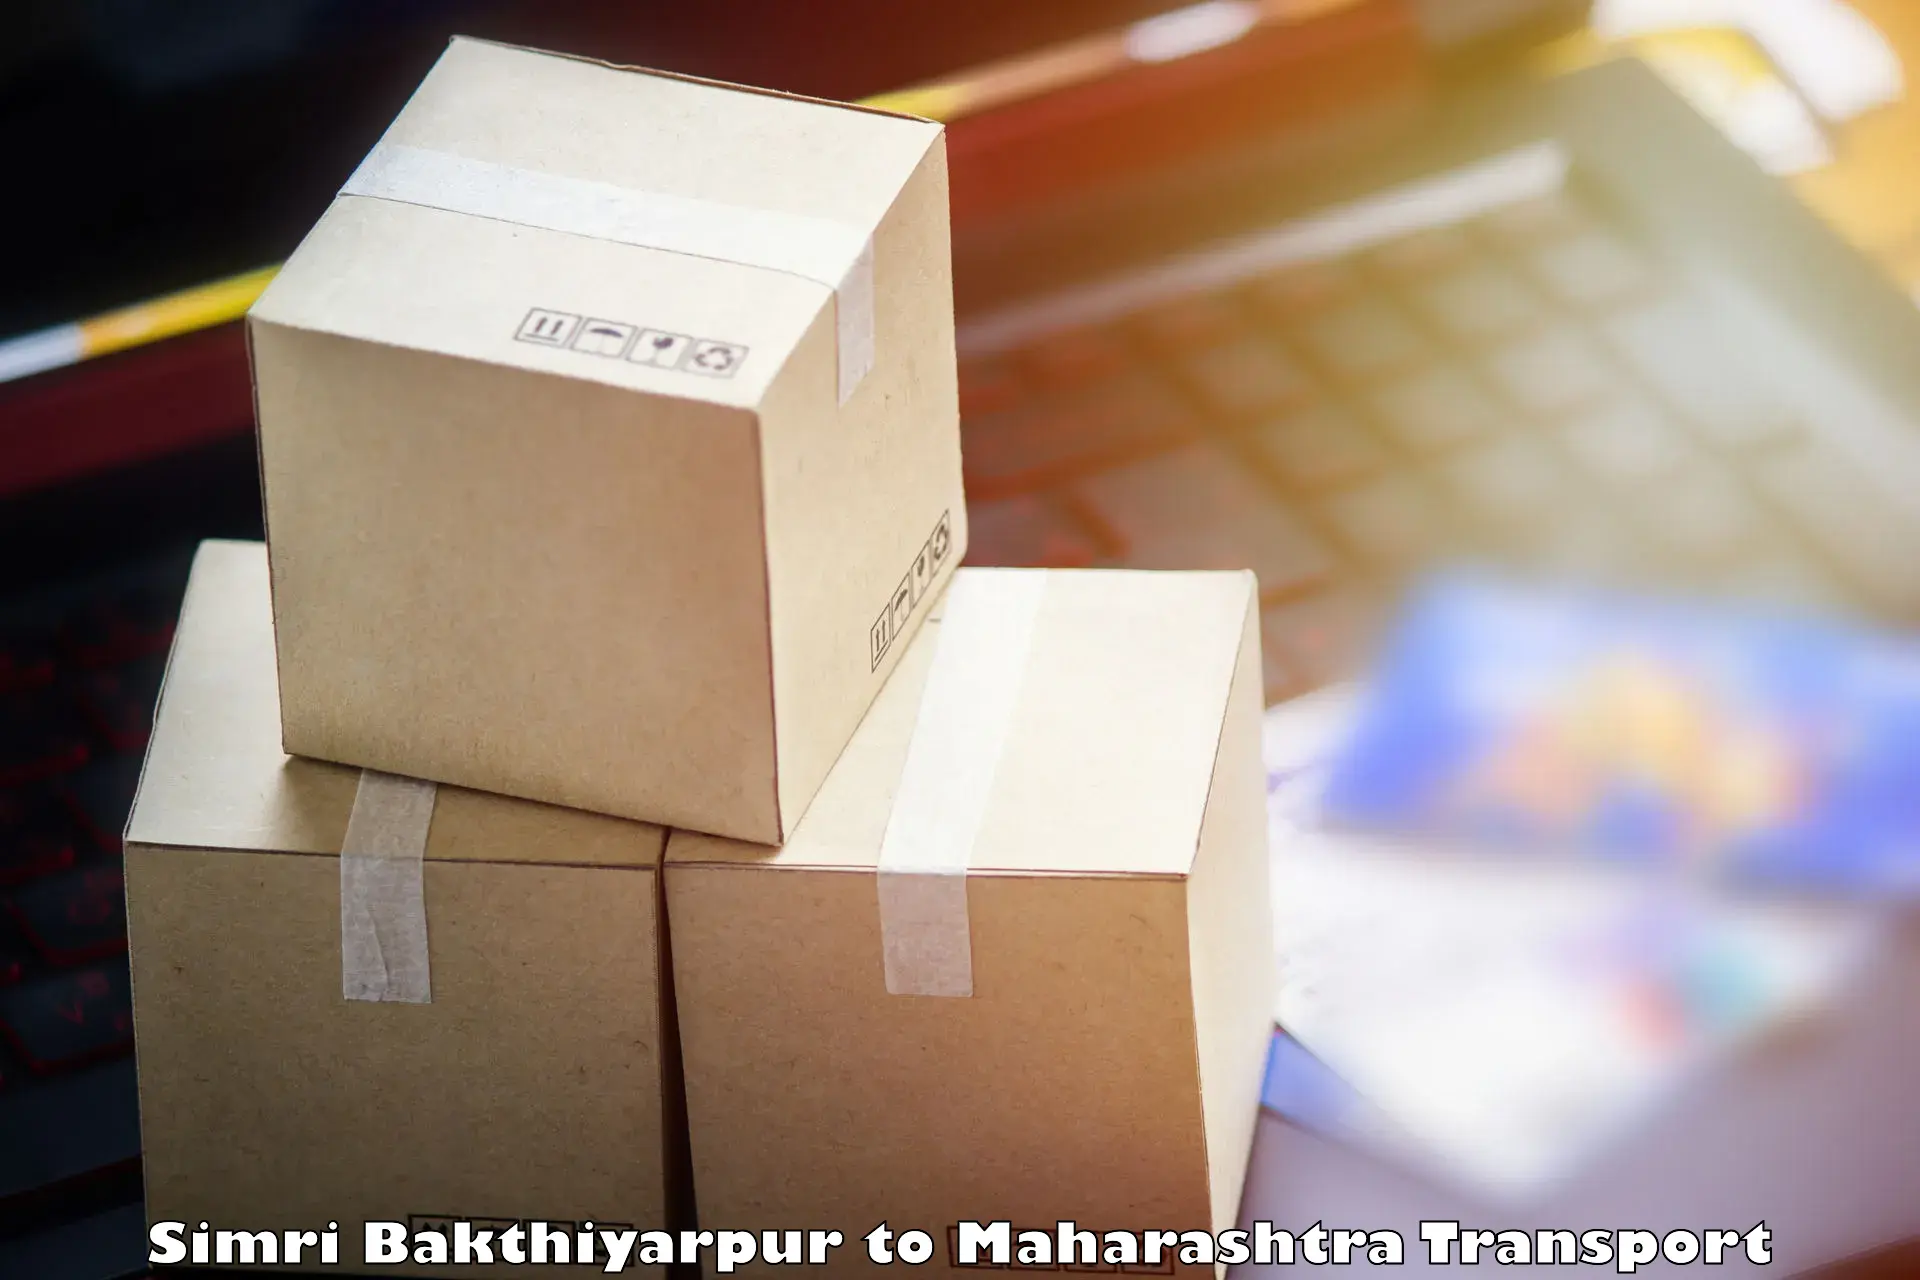 Shipping services Simri Bakthiyarpur to Maharashtra